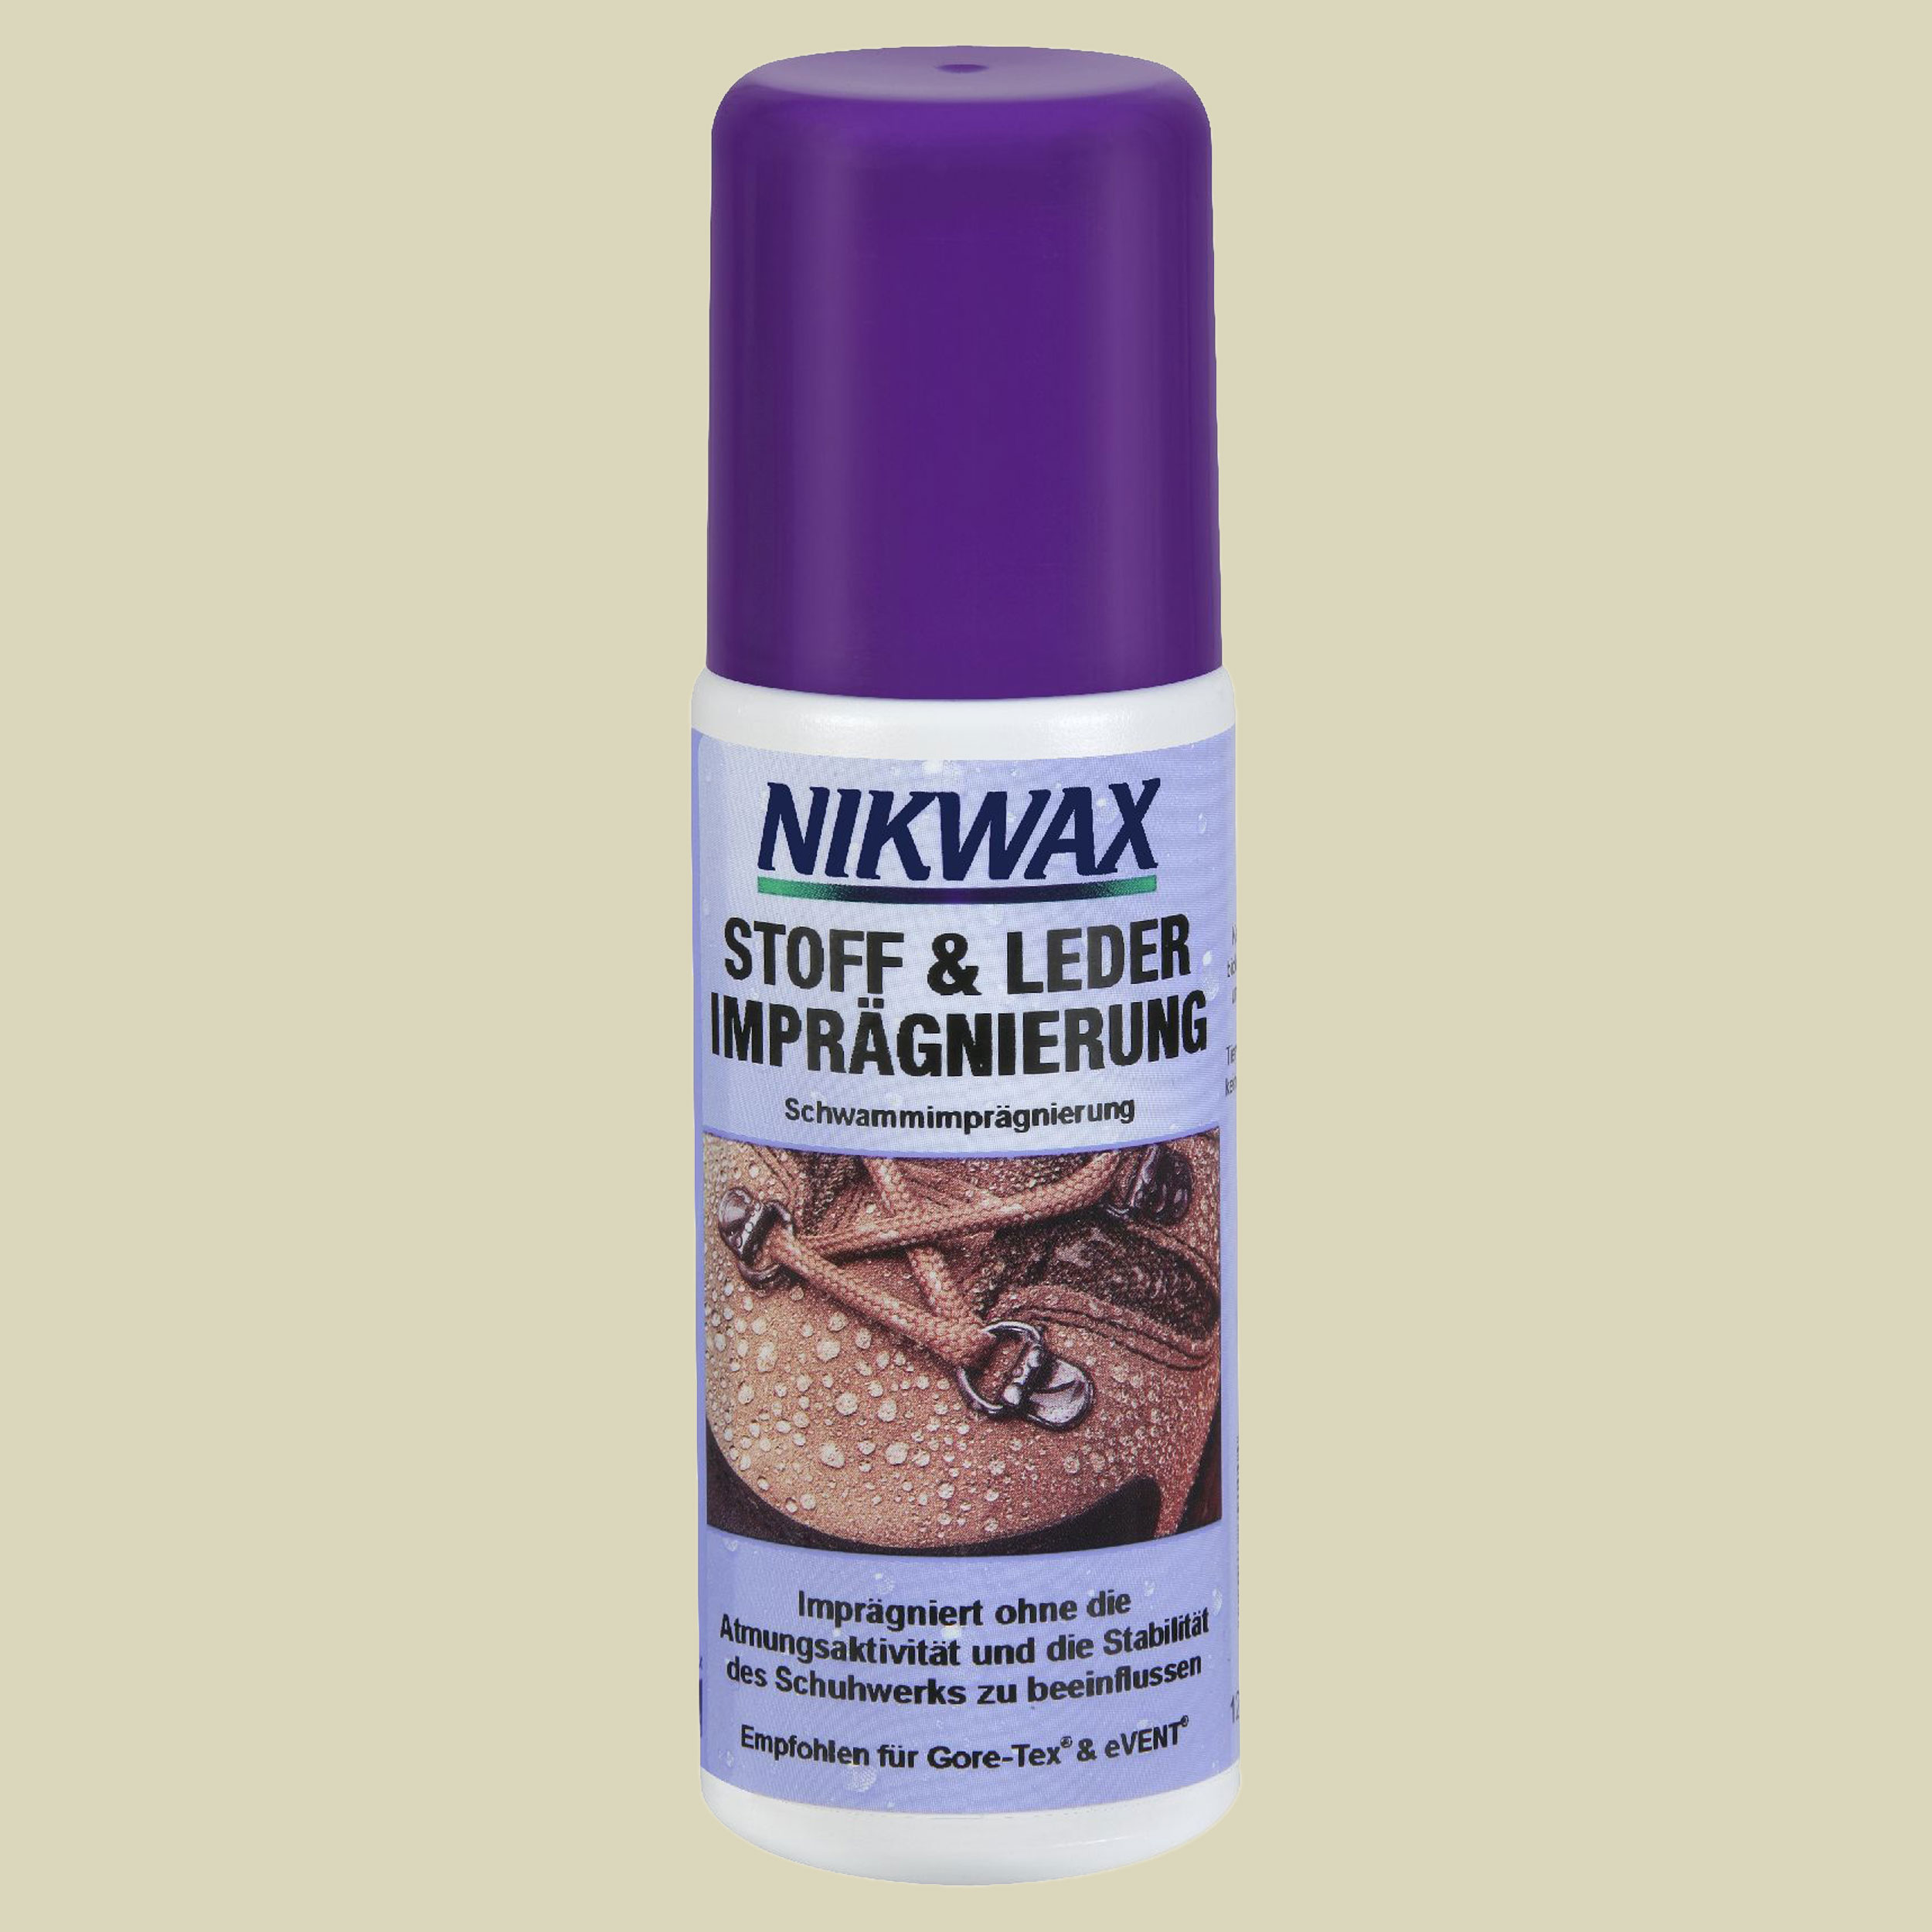 Nikwax - Stoff & Leder Imprägnierung Spray-On 125ml Inhalt 125 ml